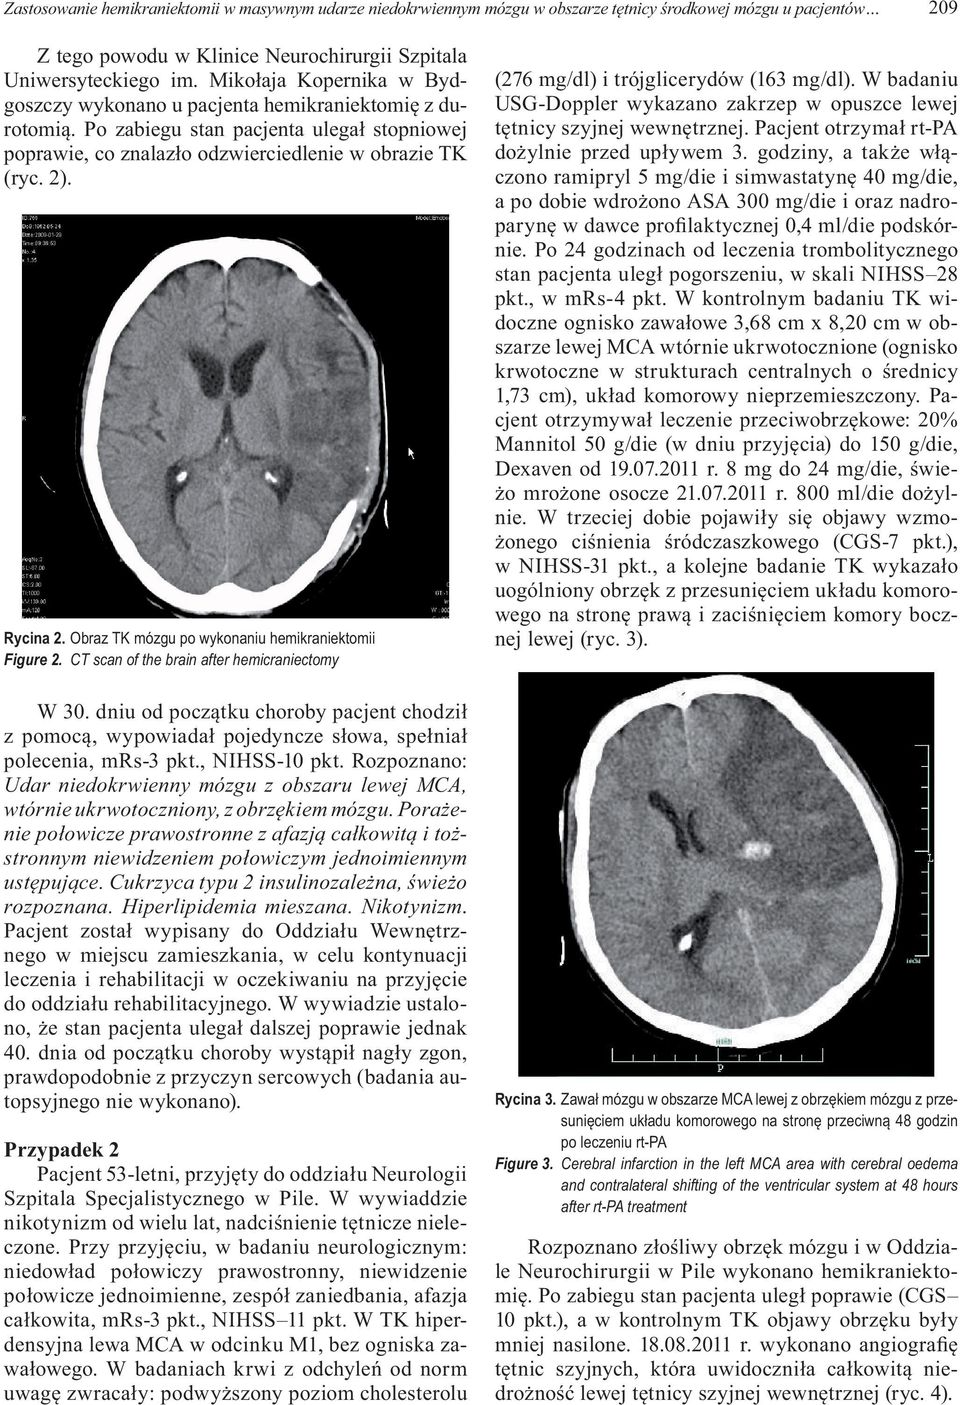 Obraz TK mózgu po wykonaniu hemikraniektomii Figure 2. CT scan of the brain after hemicraniectomy W 30.